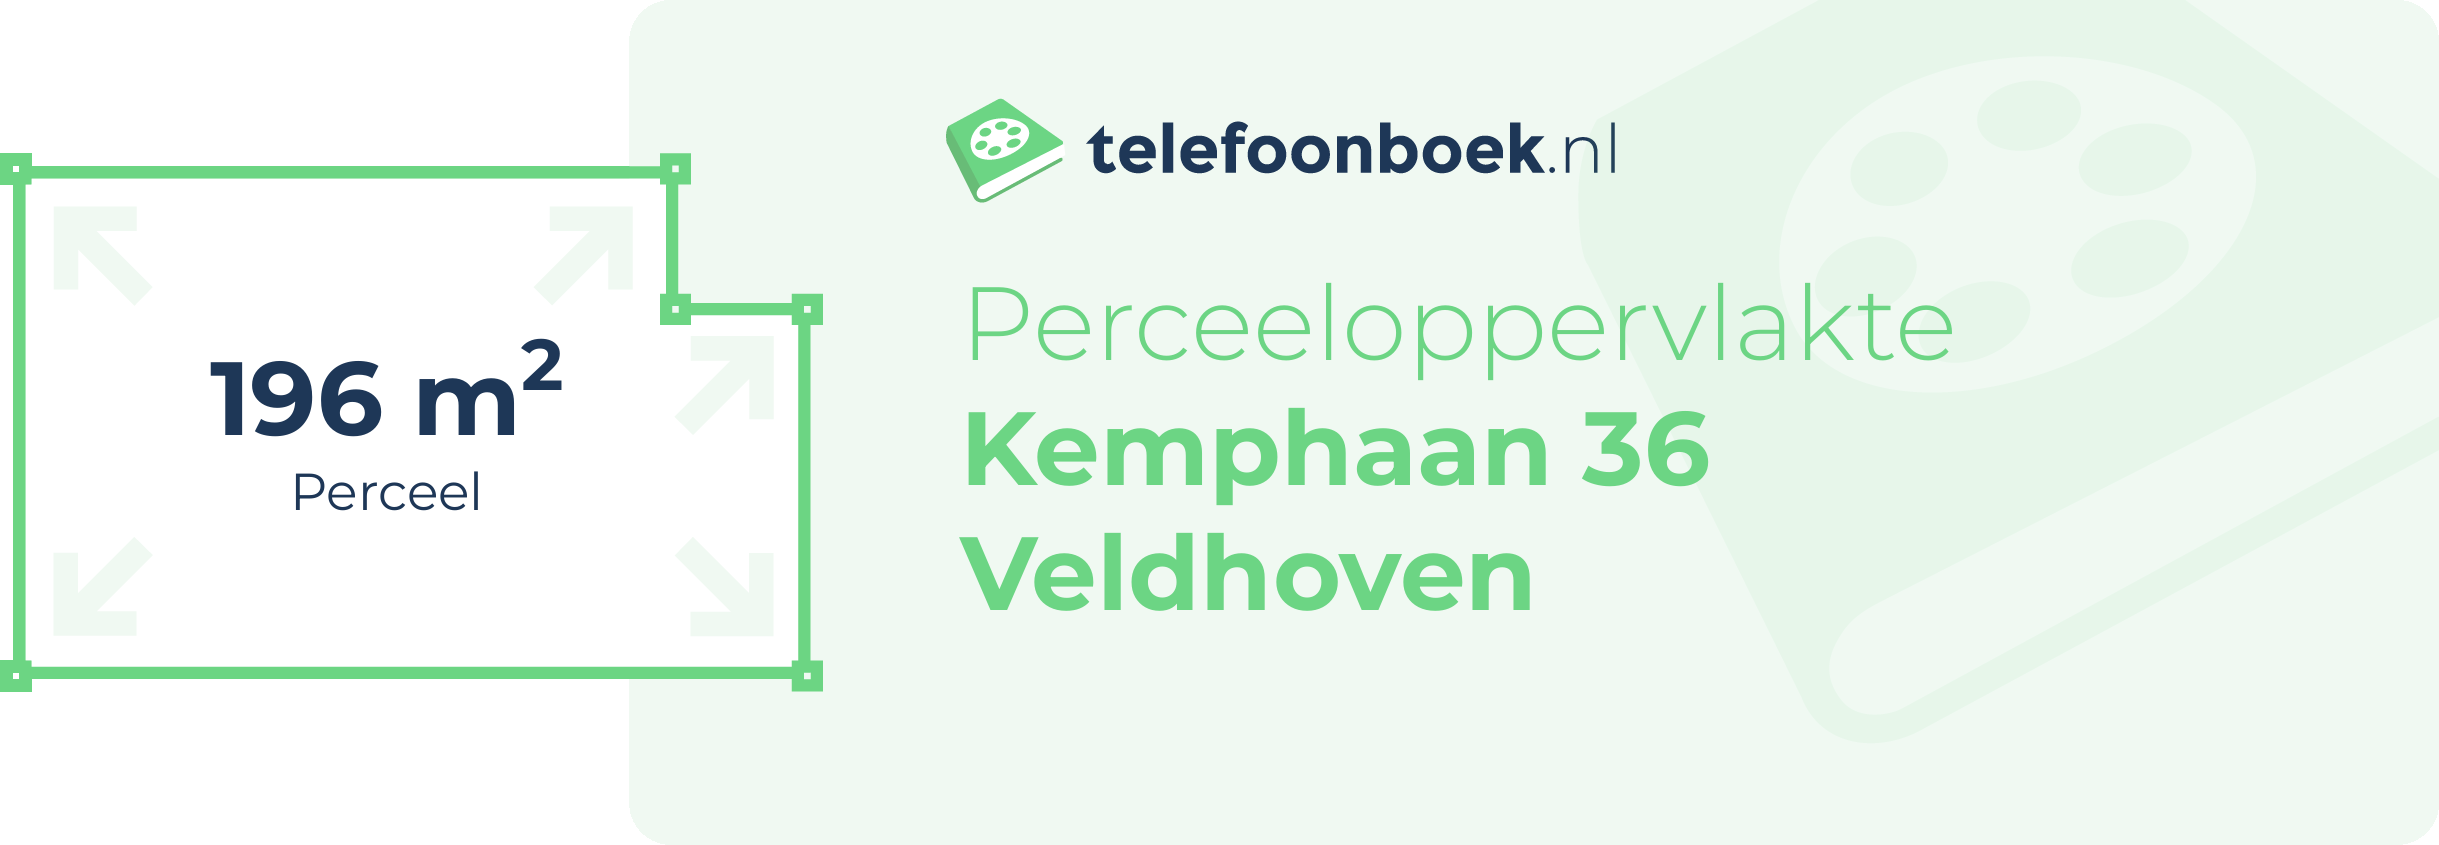 Perceeloppervlakte Kemphaan 36 Veldhoven